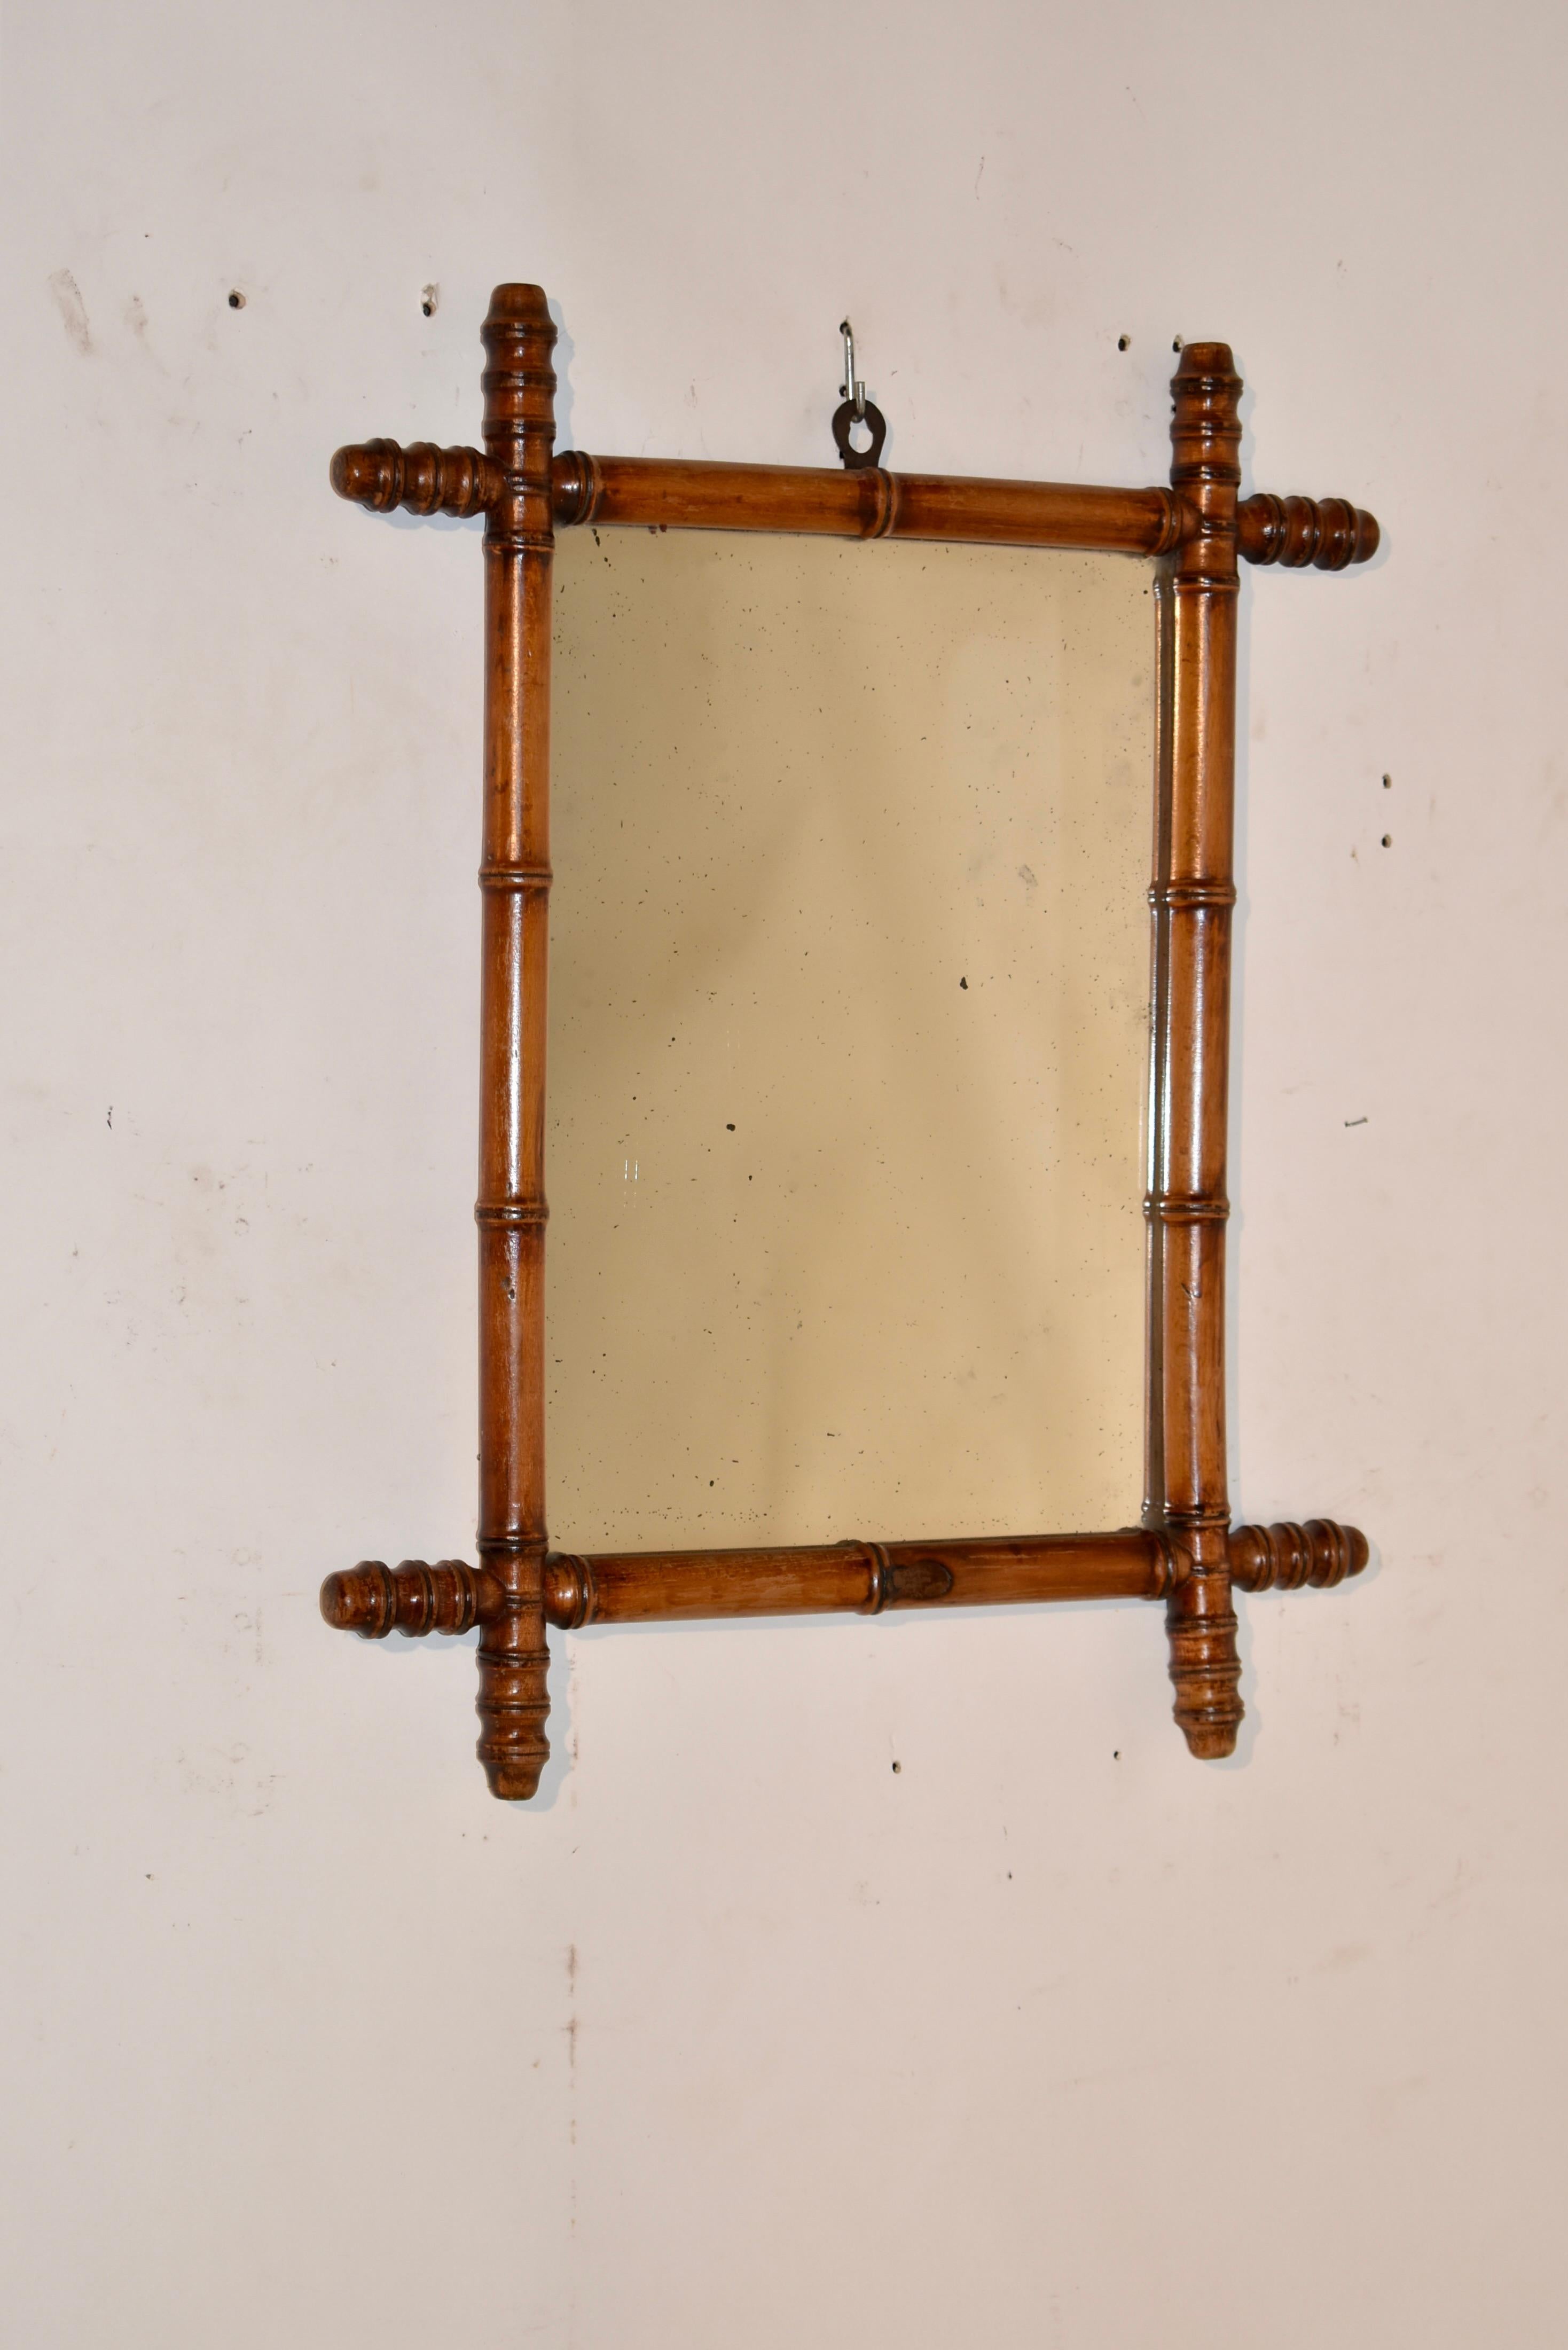 Ende des 19. Jahrhunderts in Frankreich aus Kirsche gefertigter Spiegel aus Bambusimitat.  Der Rahmen ist von Hand gedrechselt und sieht aus wie Bambus, ist aber aus reicher Kirsche gefertigt und behält seine ursprüngliche Farbe und Patina.  Die